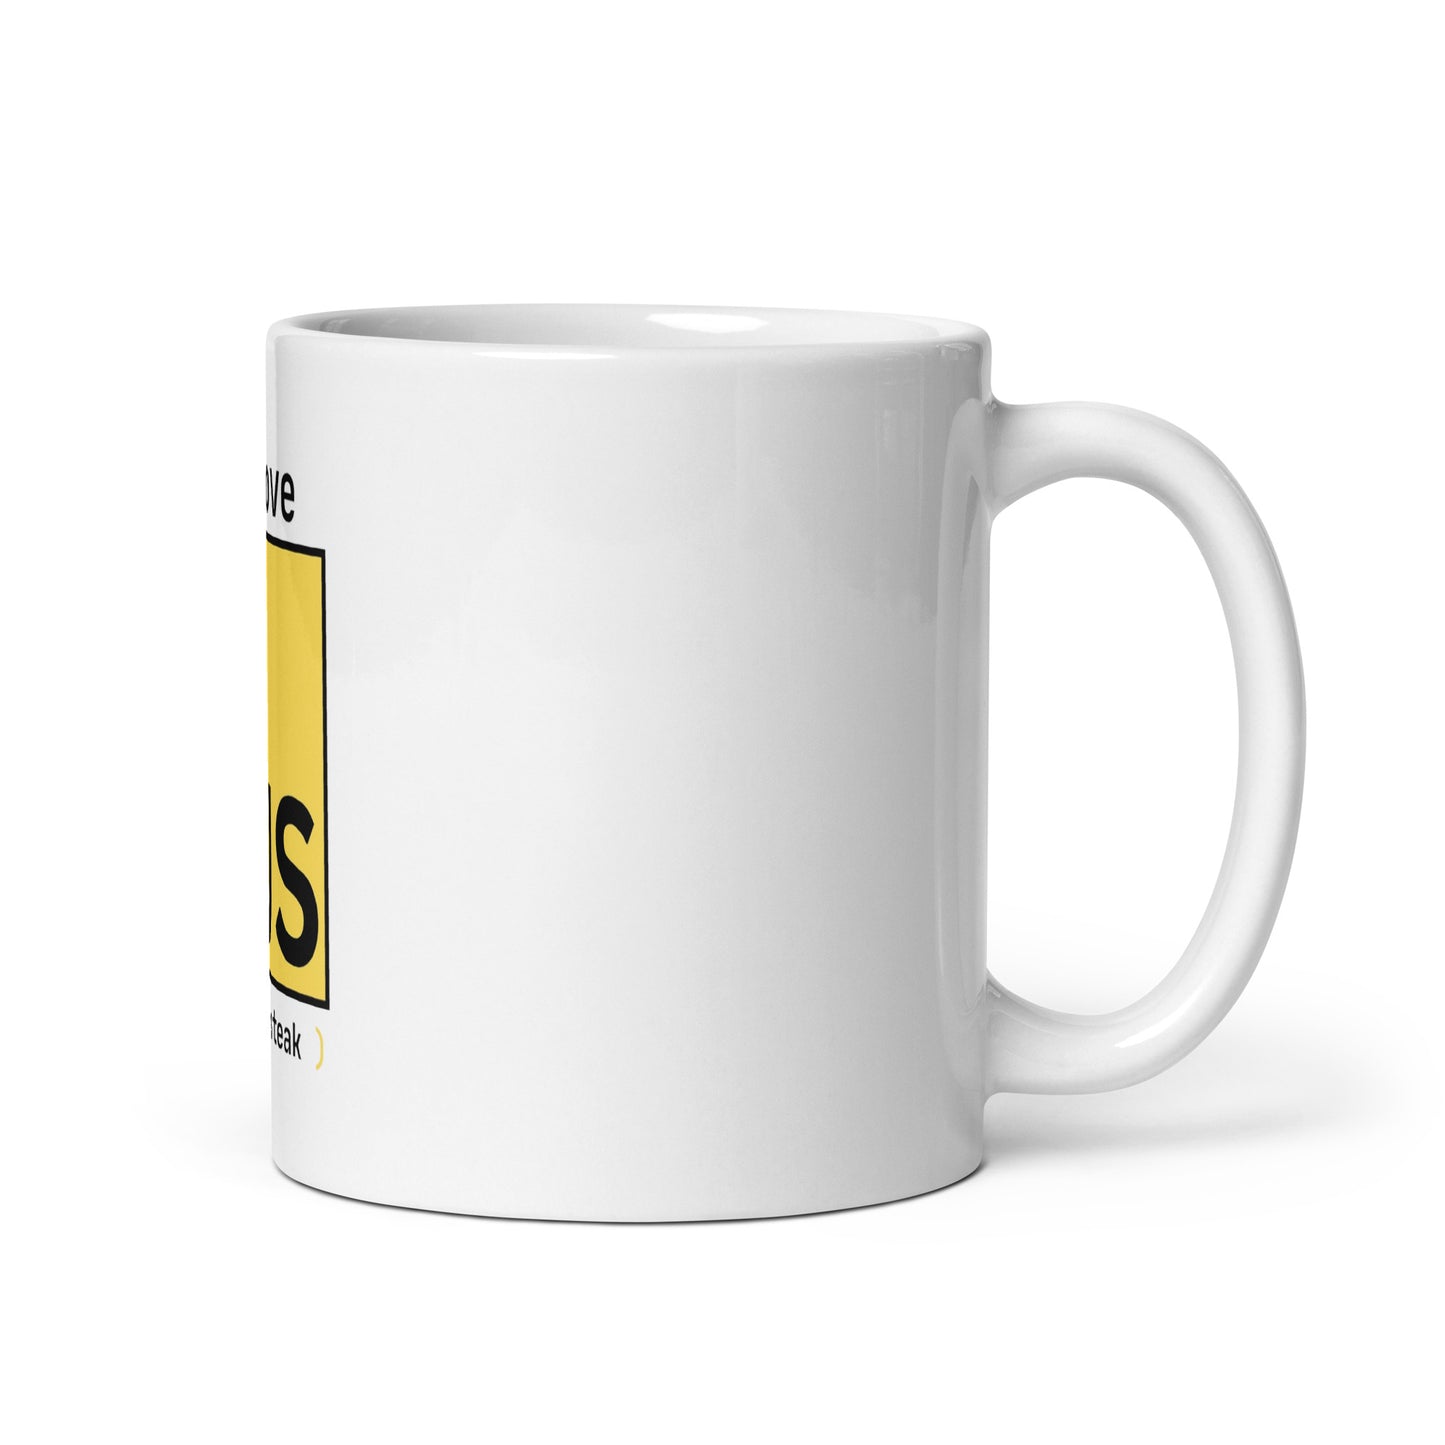 I Love JS mug